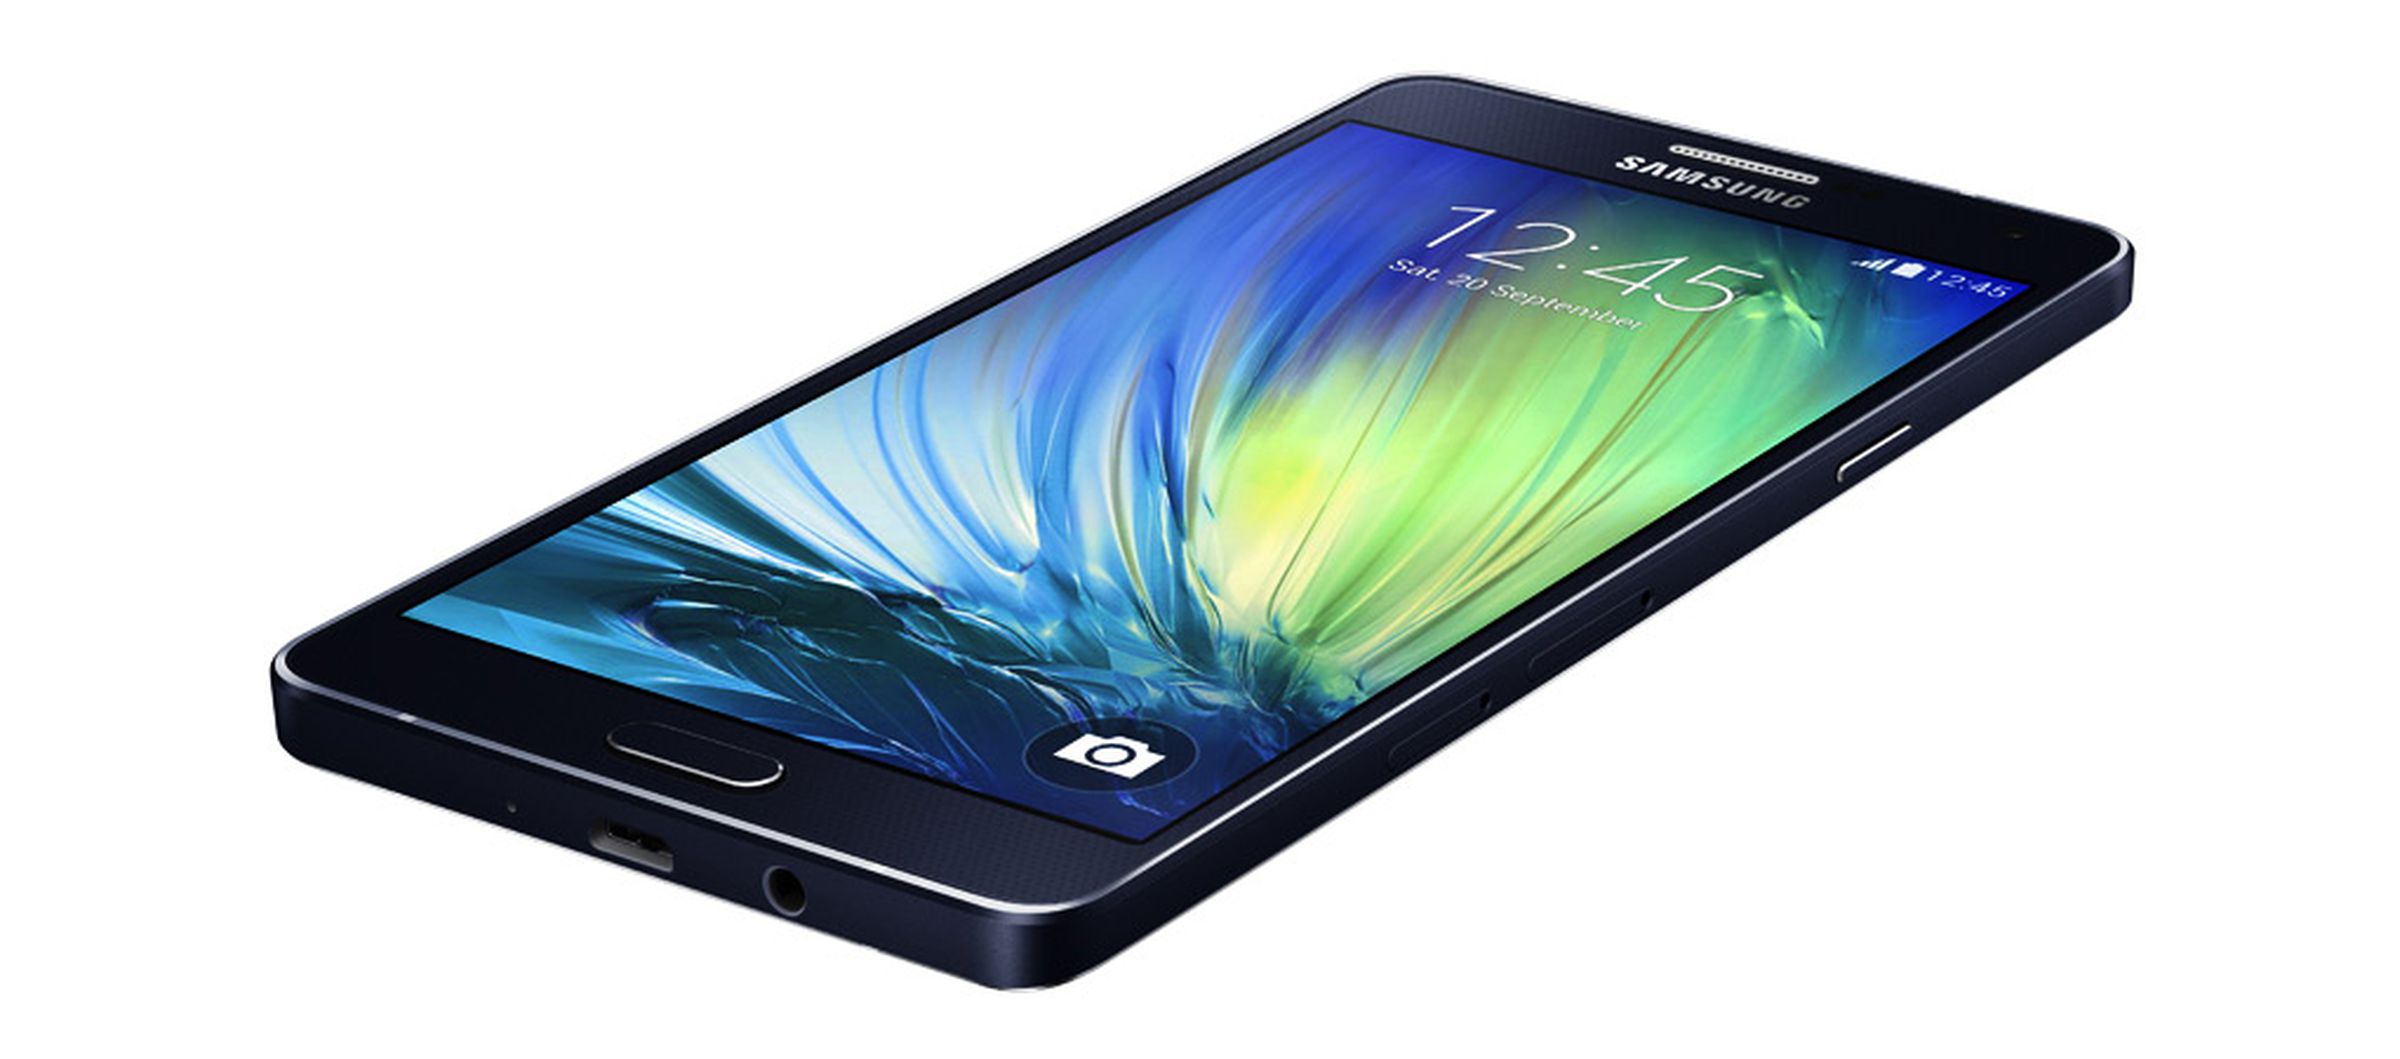 Samsung Galaxy A7 press photos